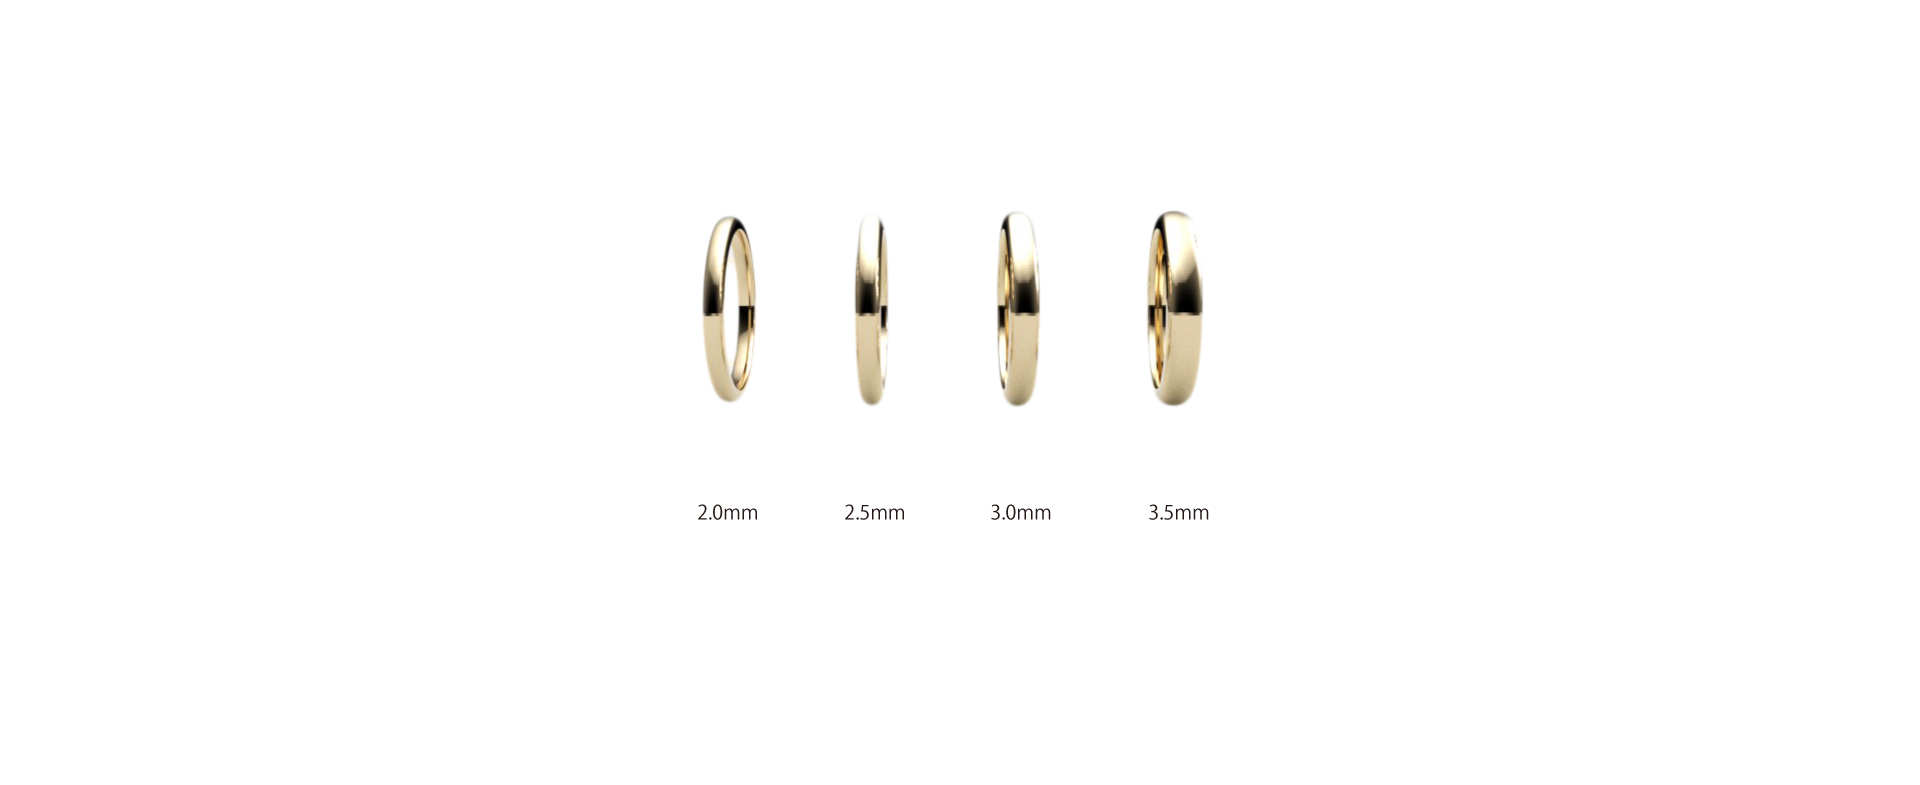 久留米市ジュエリーセレクトショップCHARIScr8では結婚指輪の幅も自由に調整できます